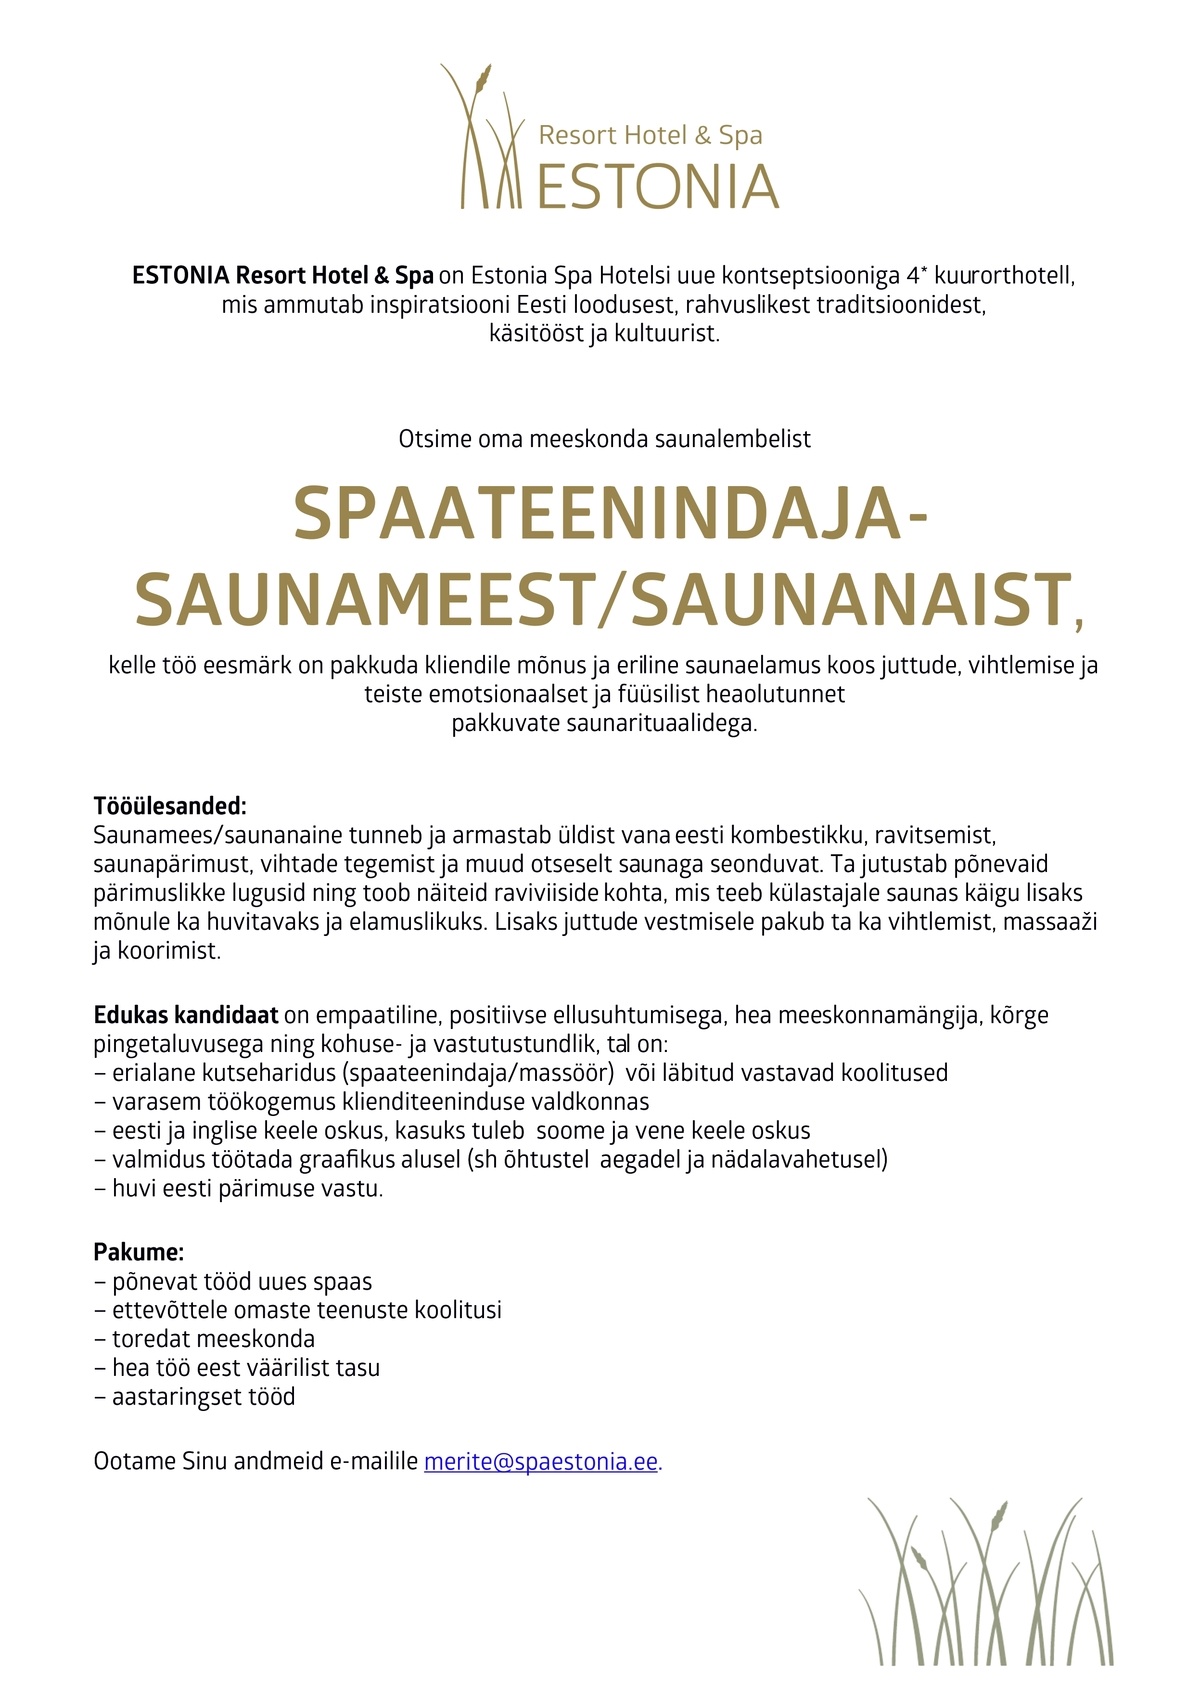 Estonia Spa Hotels AS Saunamees/saunanaine